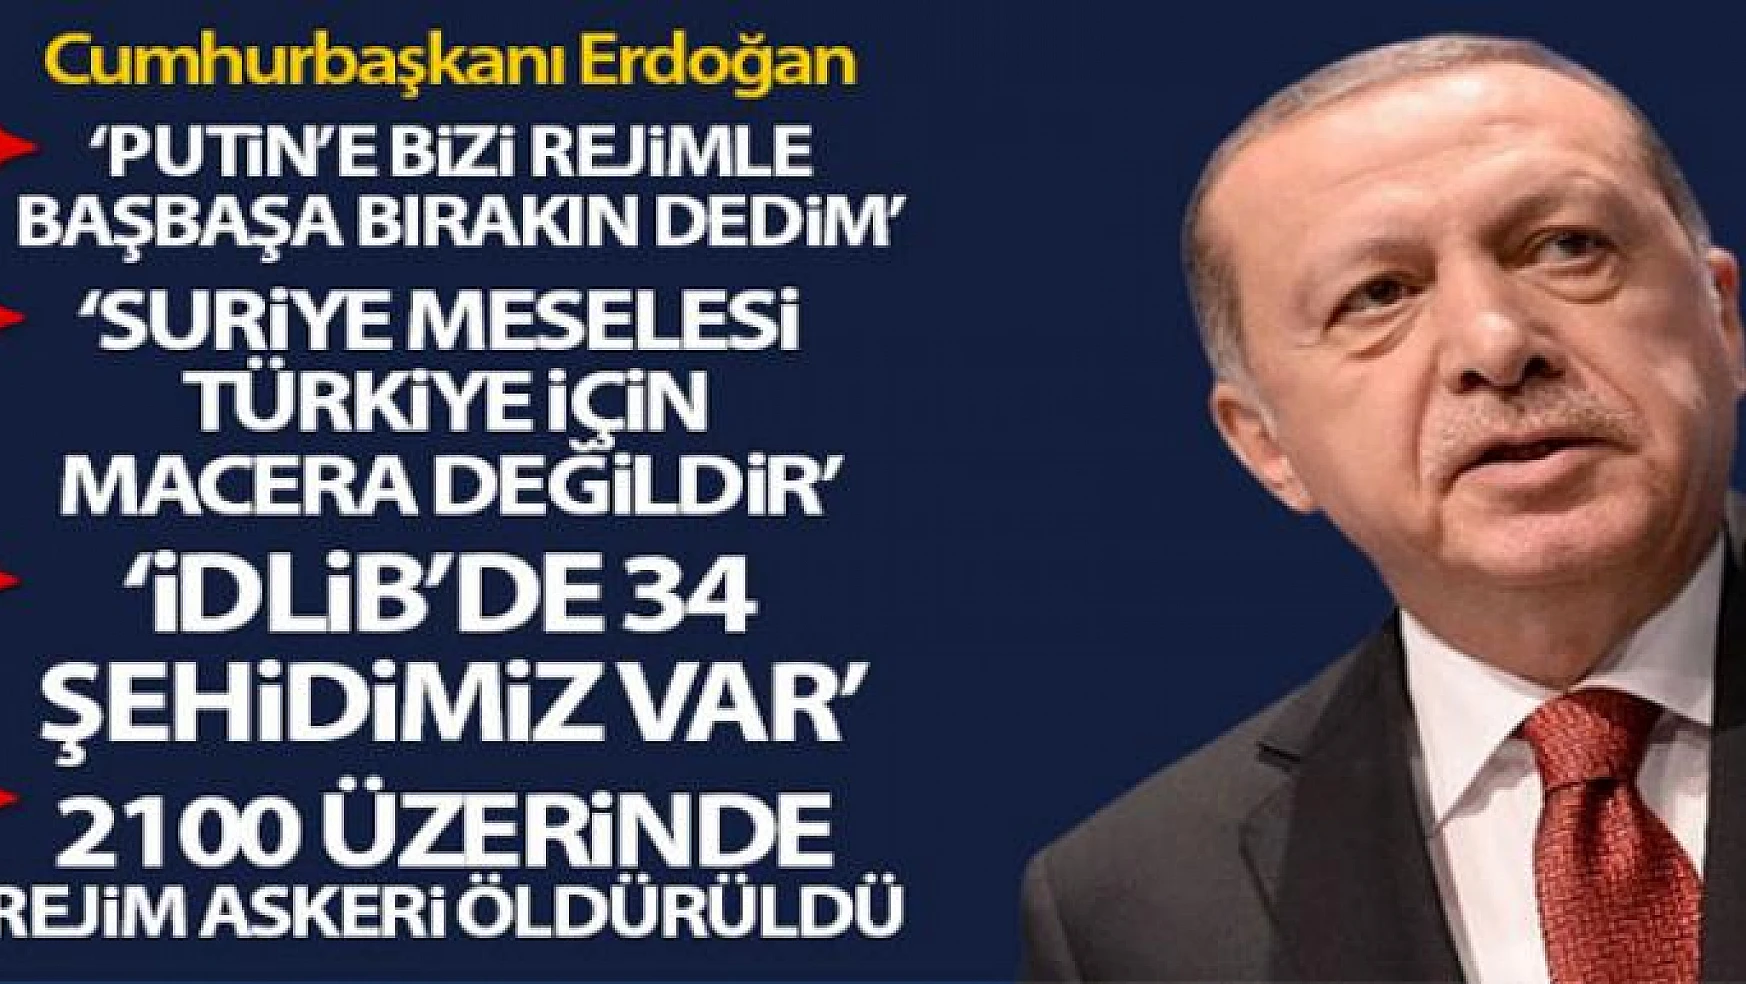 Cumhurbaşkanı Erdoğan: 'Suriye meselesi Türkiye için asla bir macera, sınırlarını genişletme çabası değildir'